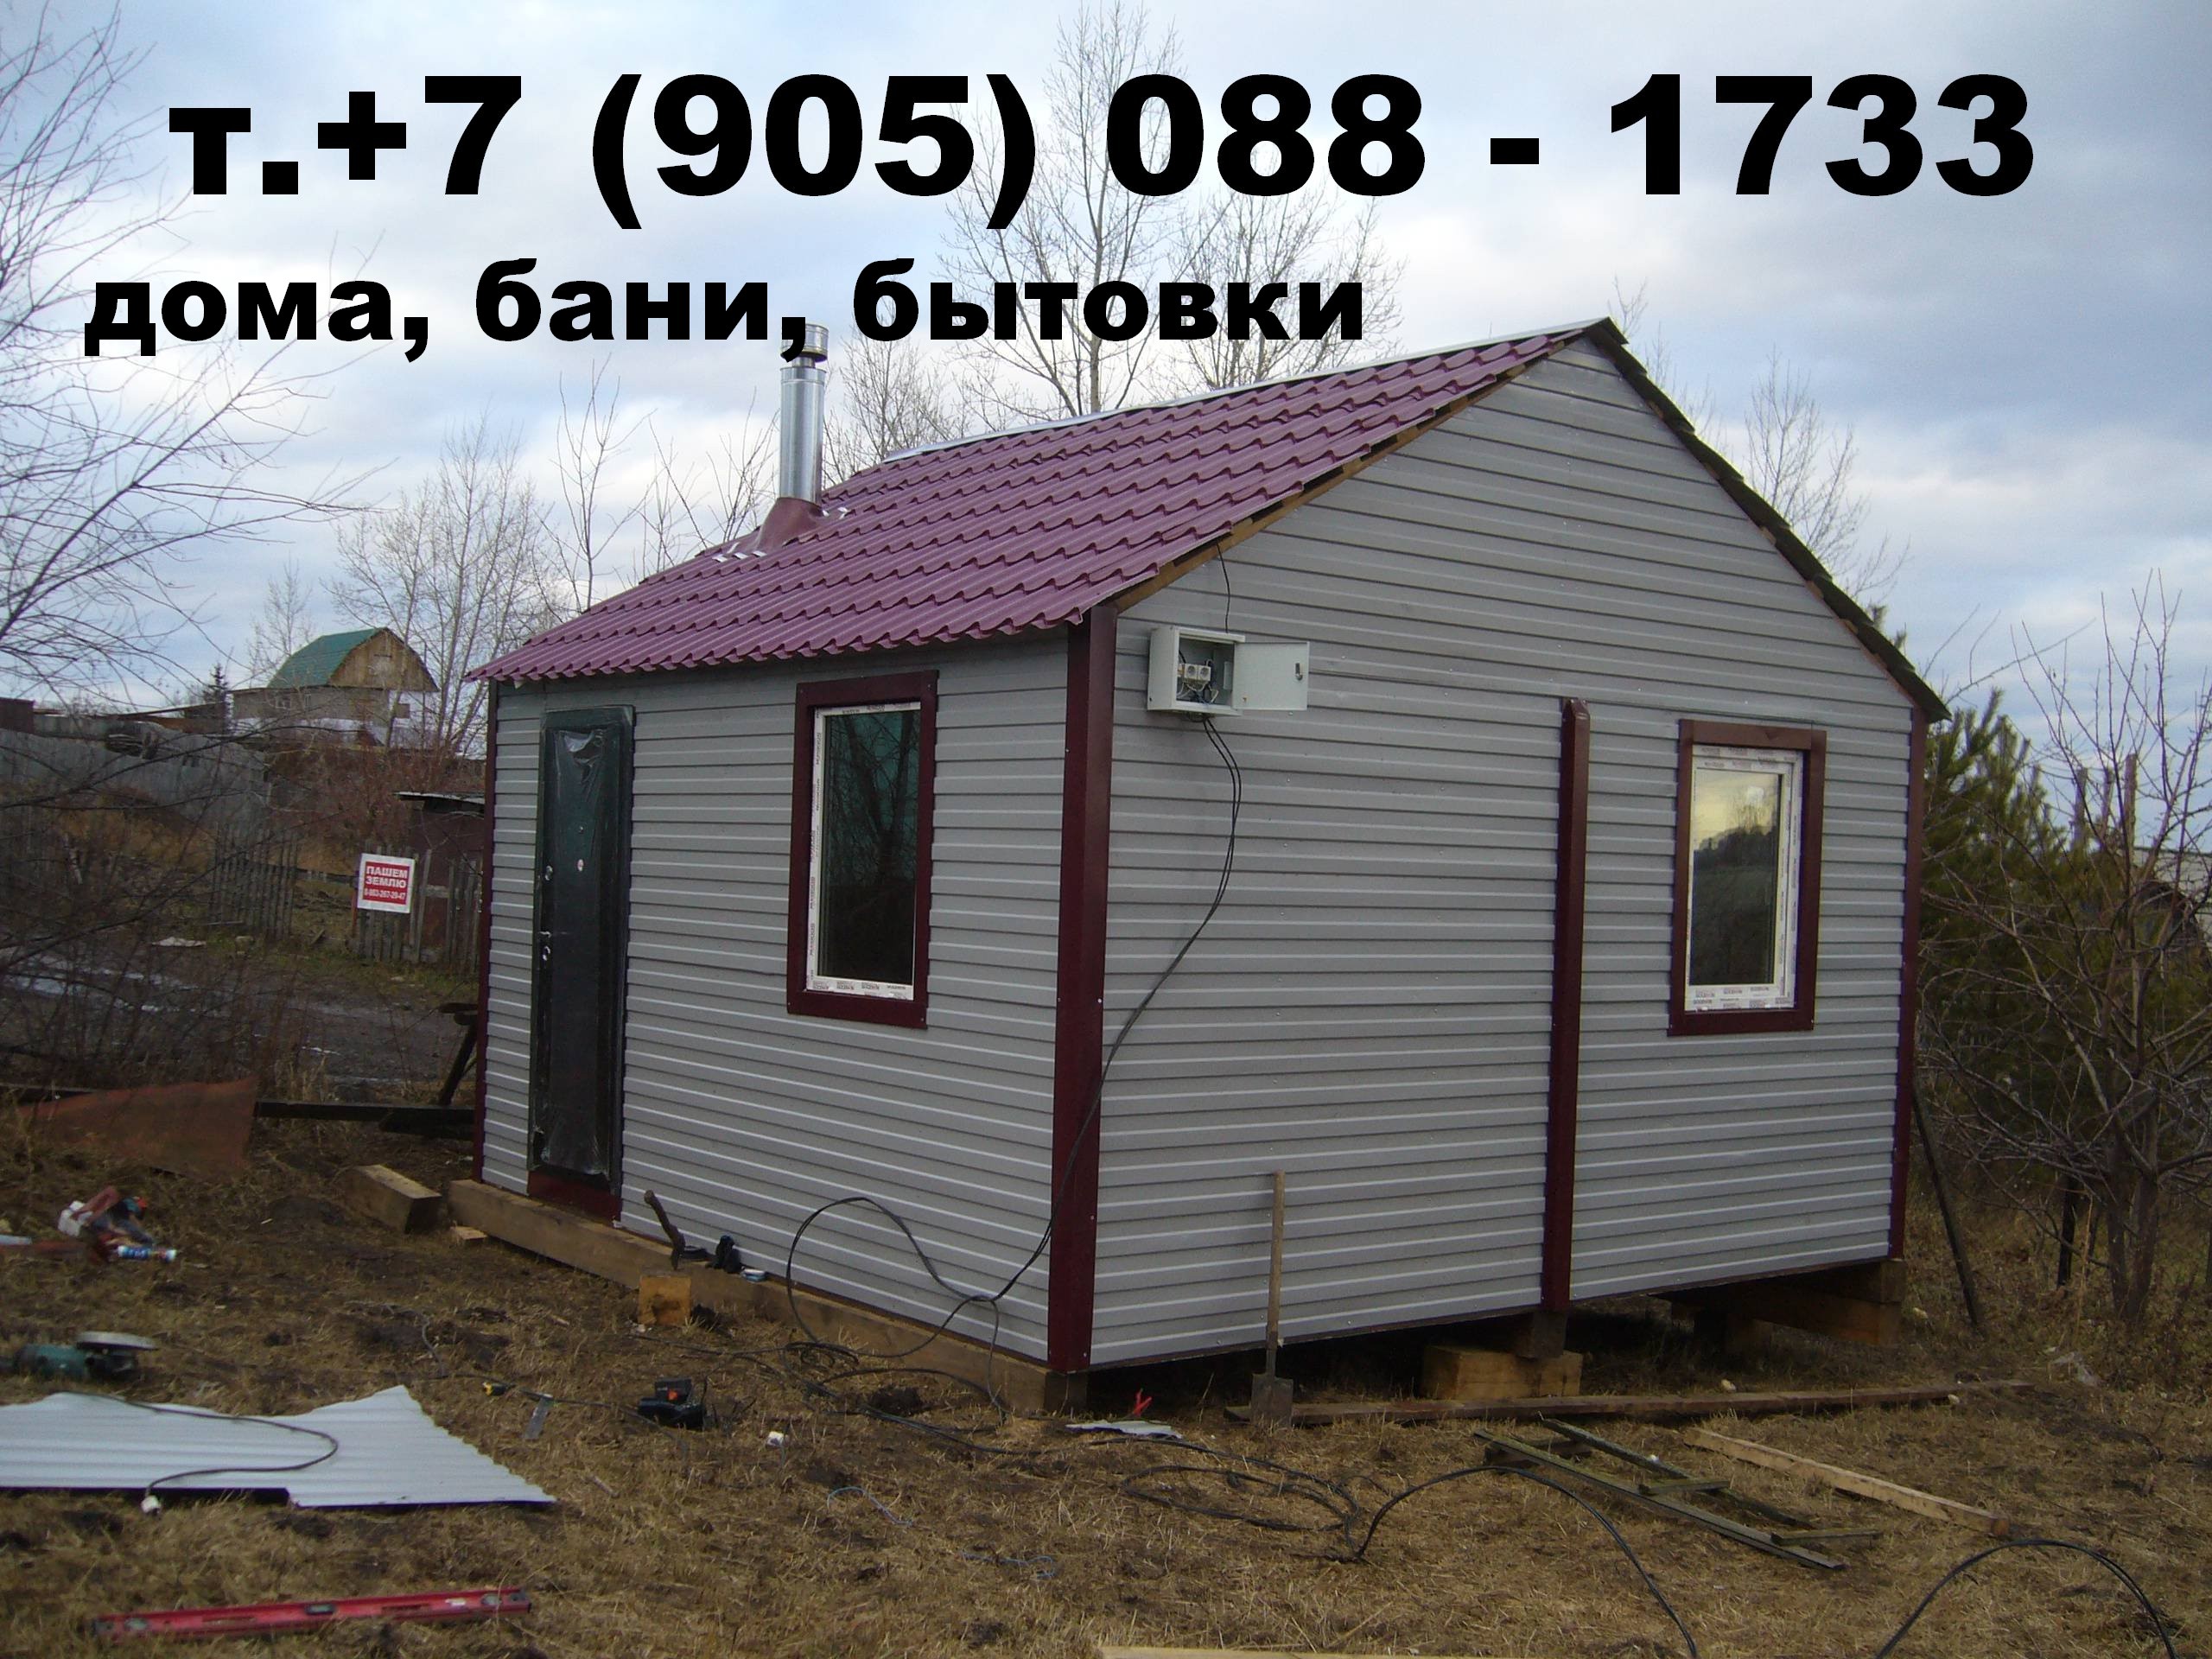 двух модульный дом для сада, дачи, отдыха в городе Красноярск, фото 2, телефон продавца: +7 (905) 088-17-33